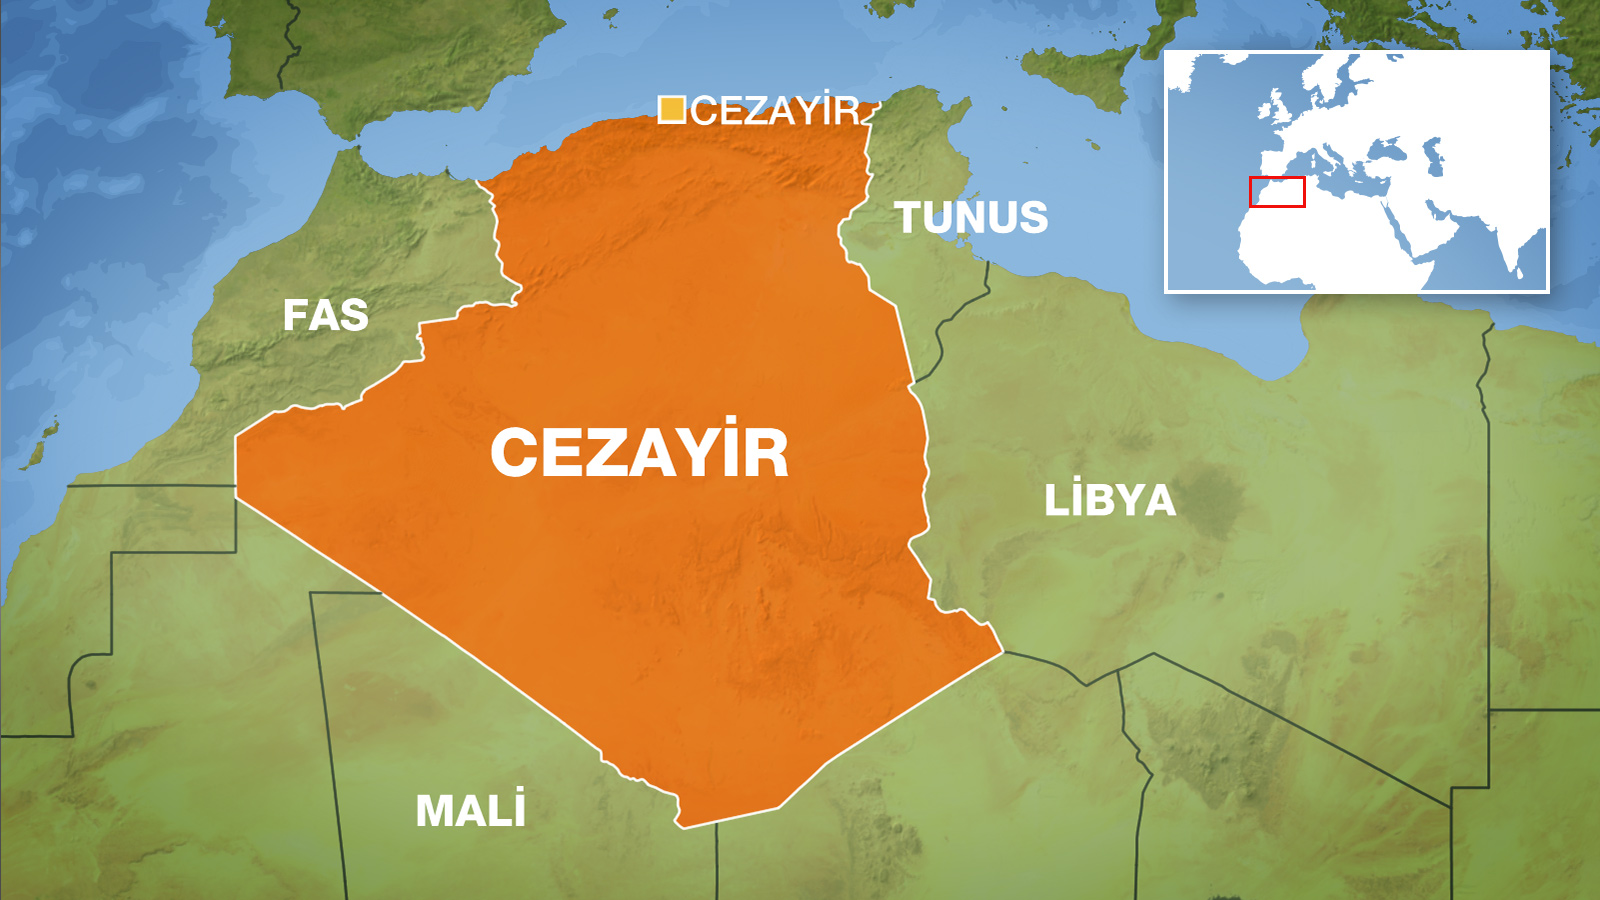 Cezayir'de etnik çatışma: 18 ölü | Al Jazeera Turk - Ortadoğu, Kafkasya,  Balkanlar, Türkiye ve çevresindeki bölgeden son dakika haberleri ve  analizler